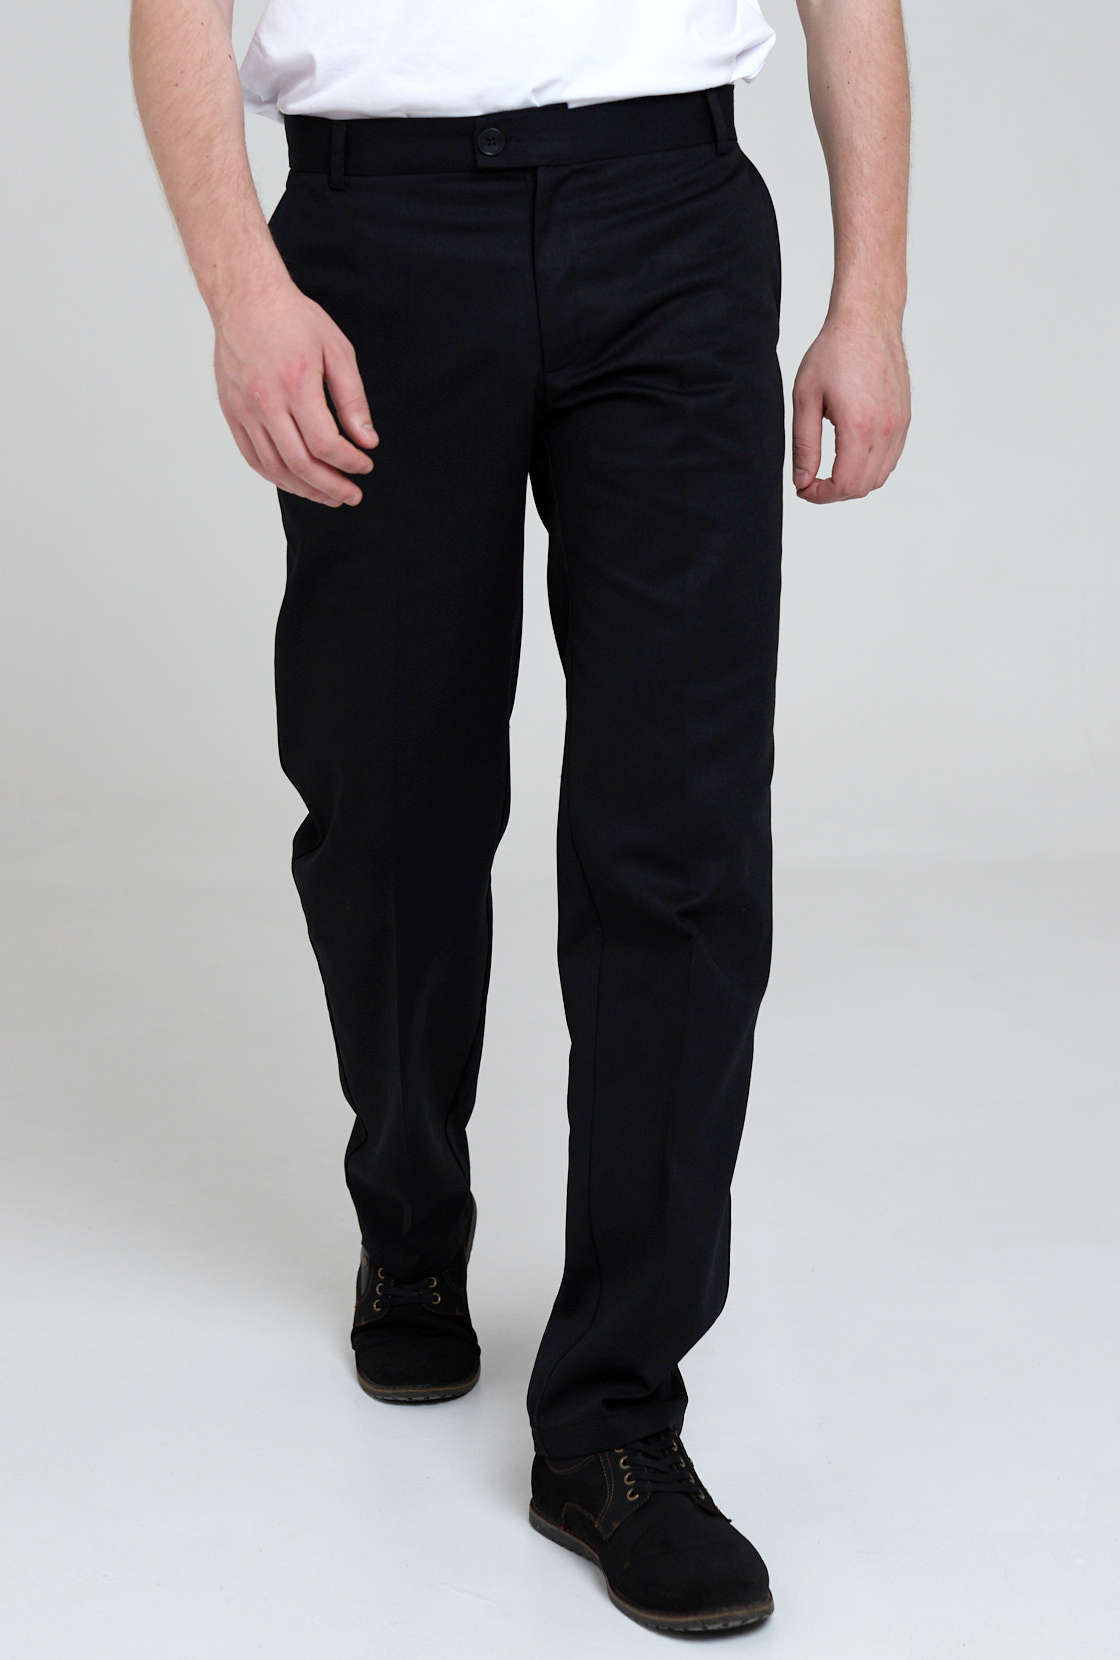 Брюки рабочие мужские IRINA EGOROVA classic trousers черные 48 RU